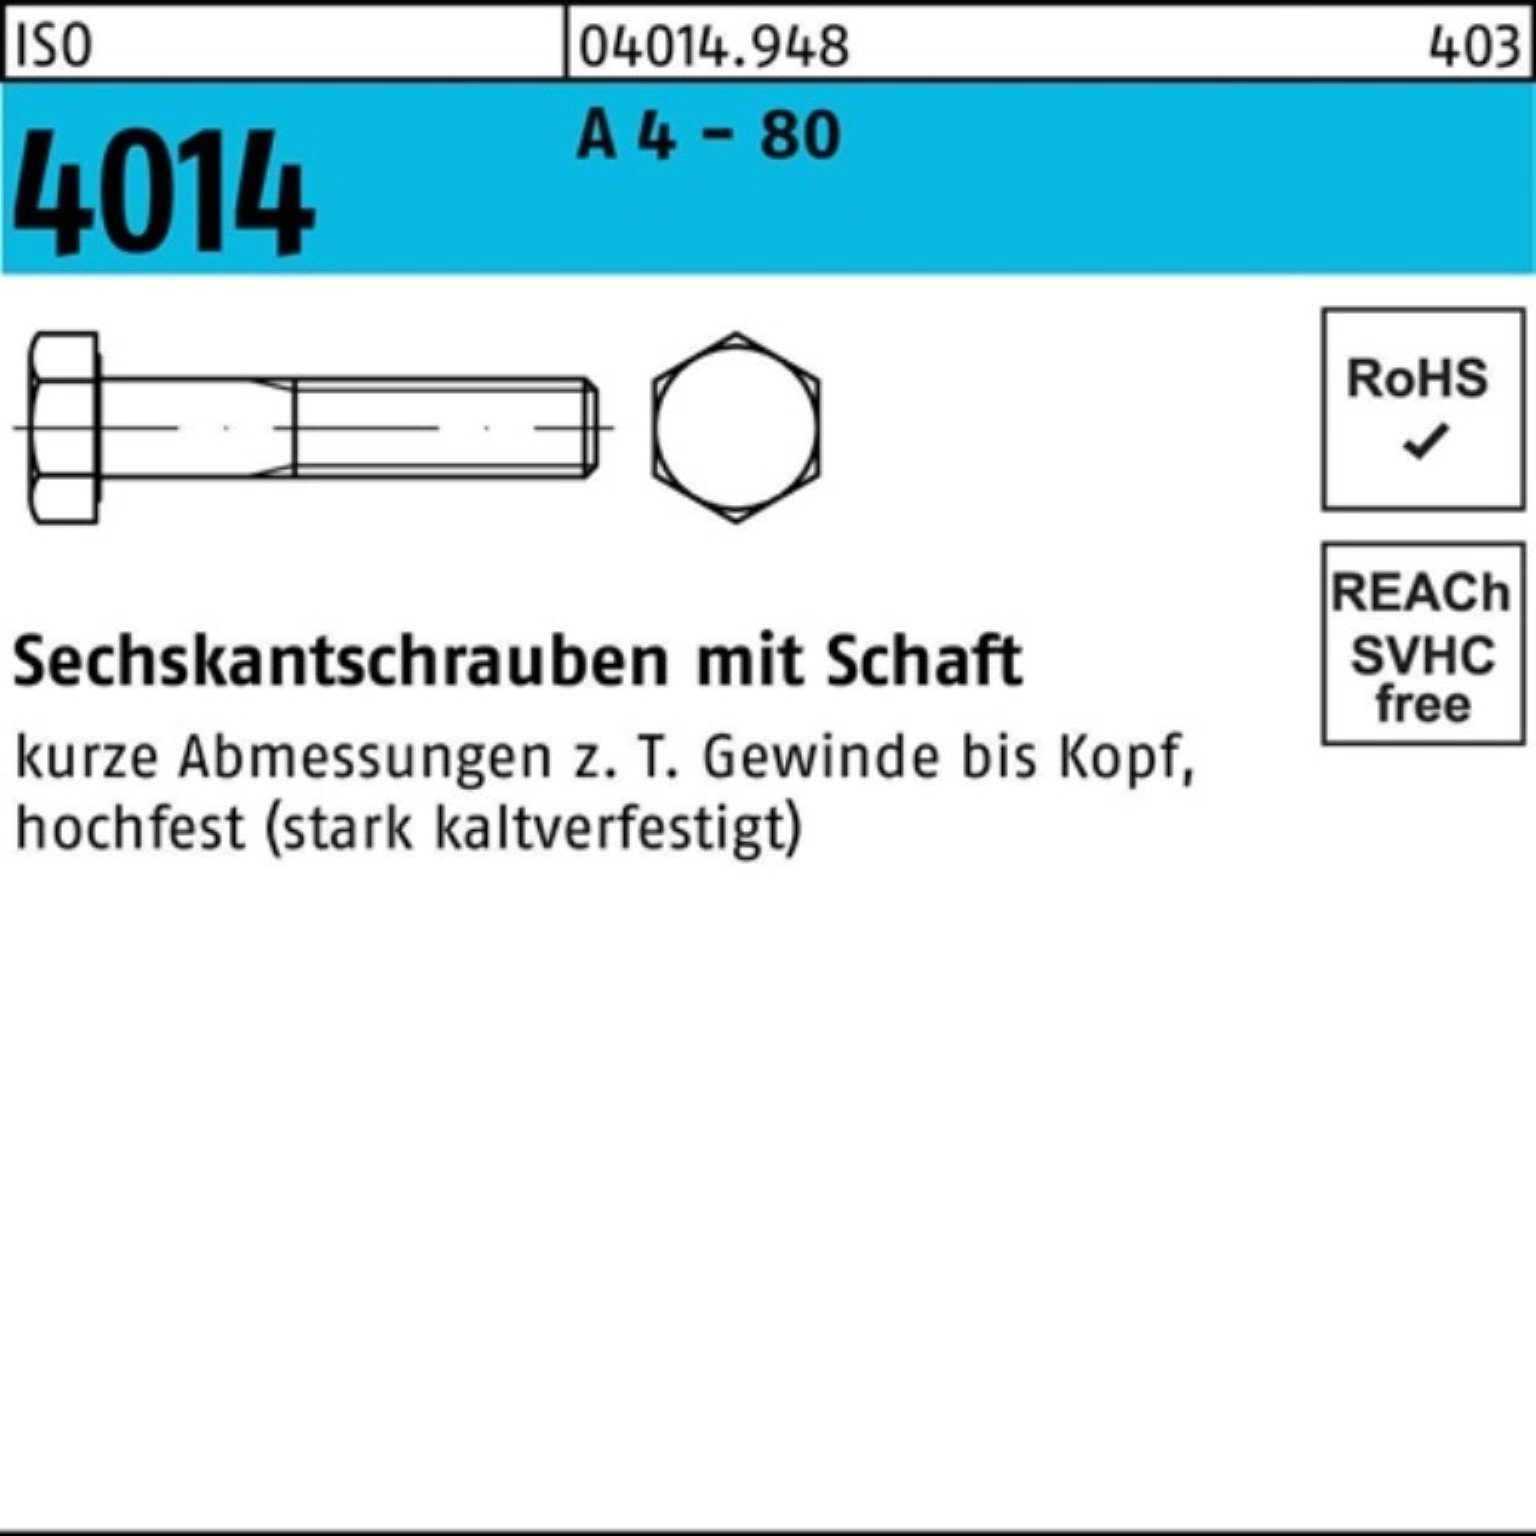 Bufab Sechskantschraube 100er Pack Sechskantschraube ISO 4014 Schaft M8x 40 A 4 - 80 100 Stüc